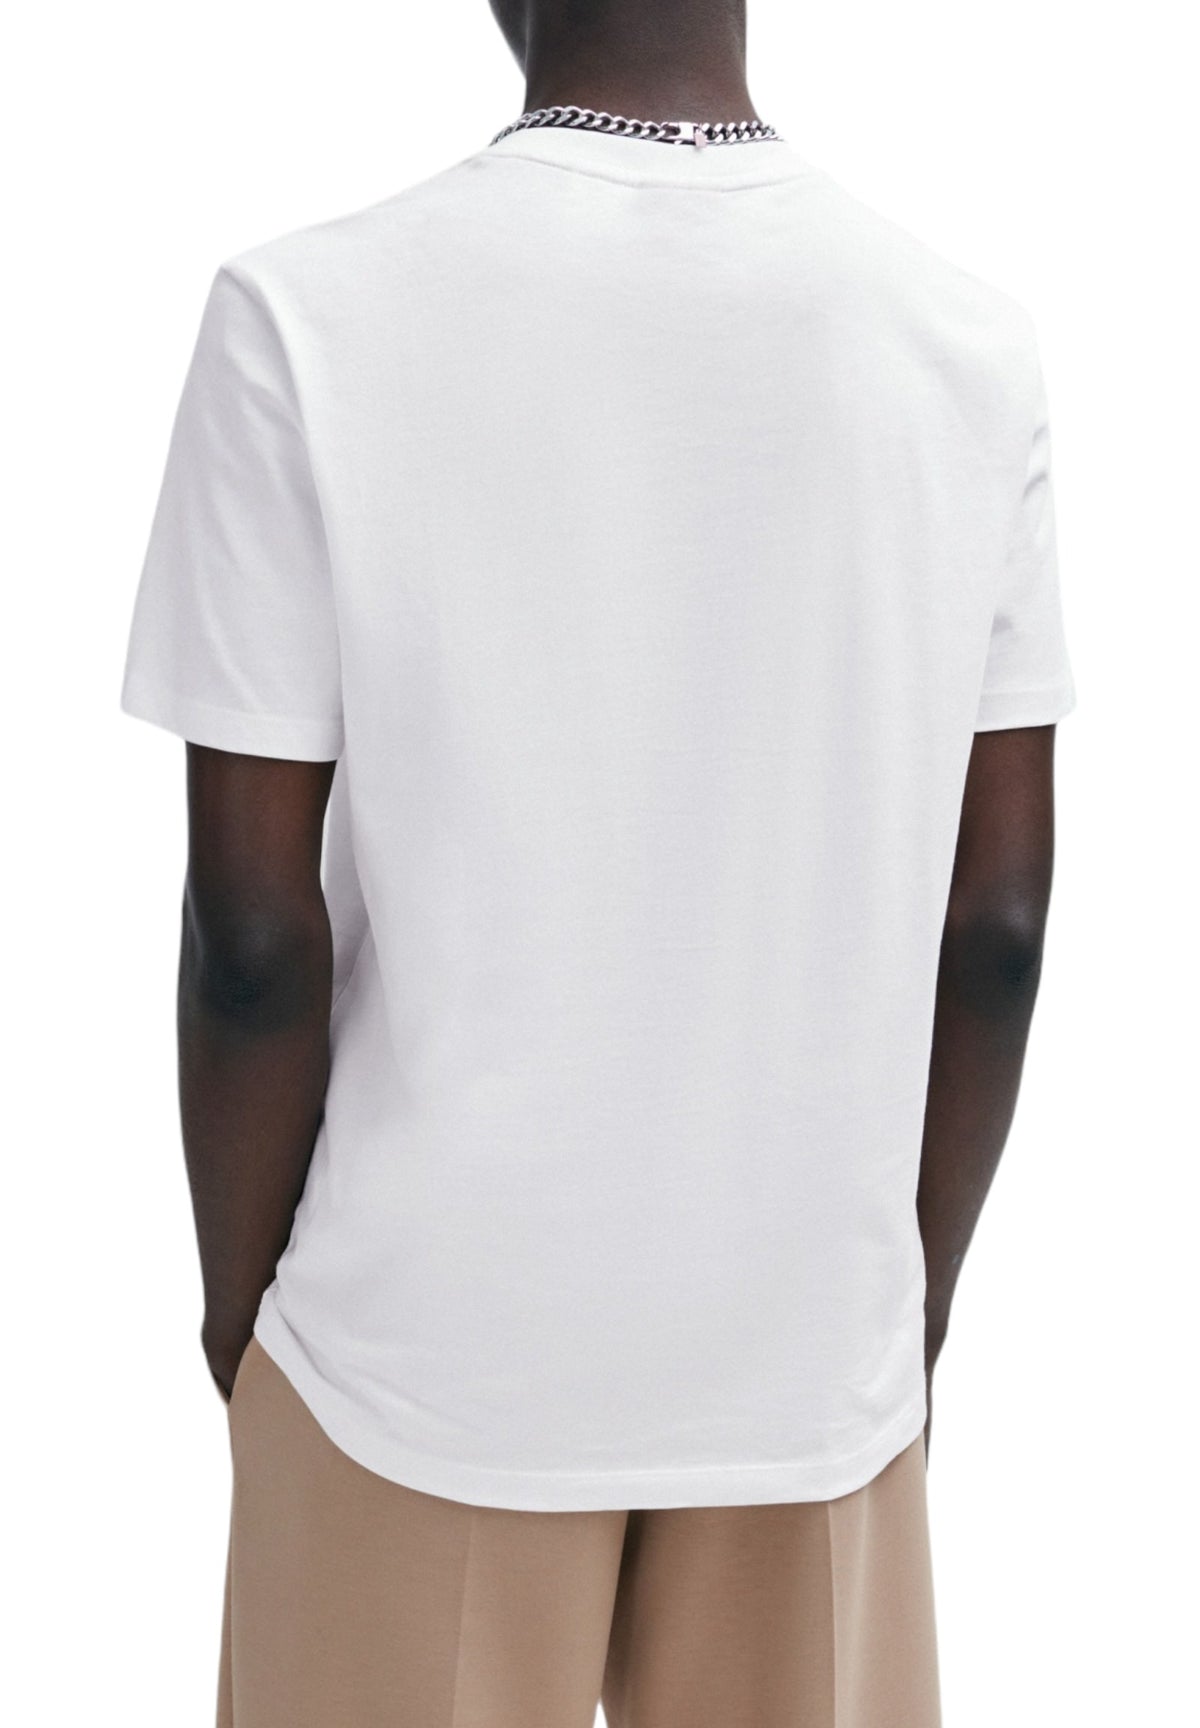 Hugo Uomo T-shirt 50504542-100 Bianco